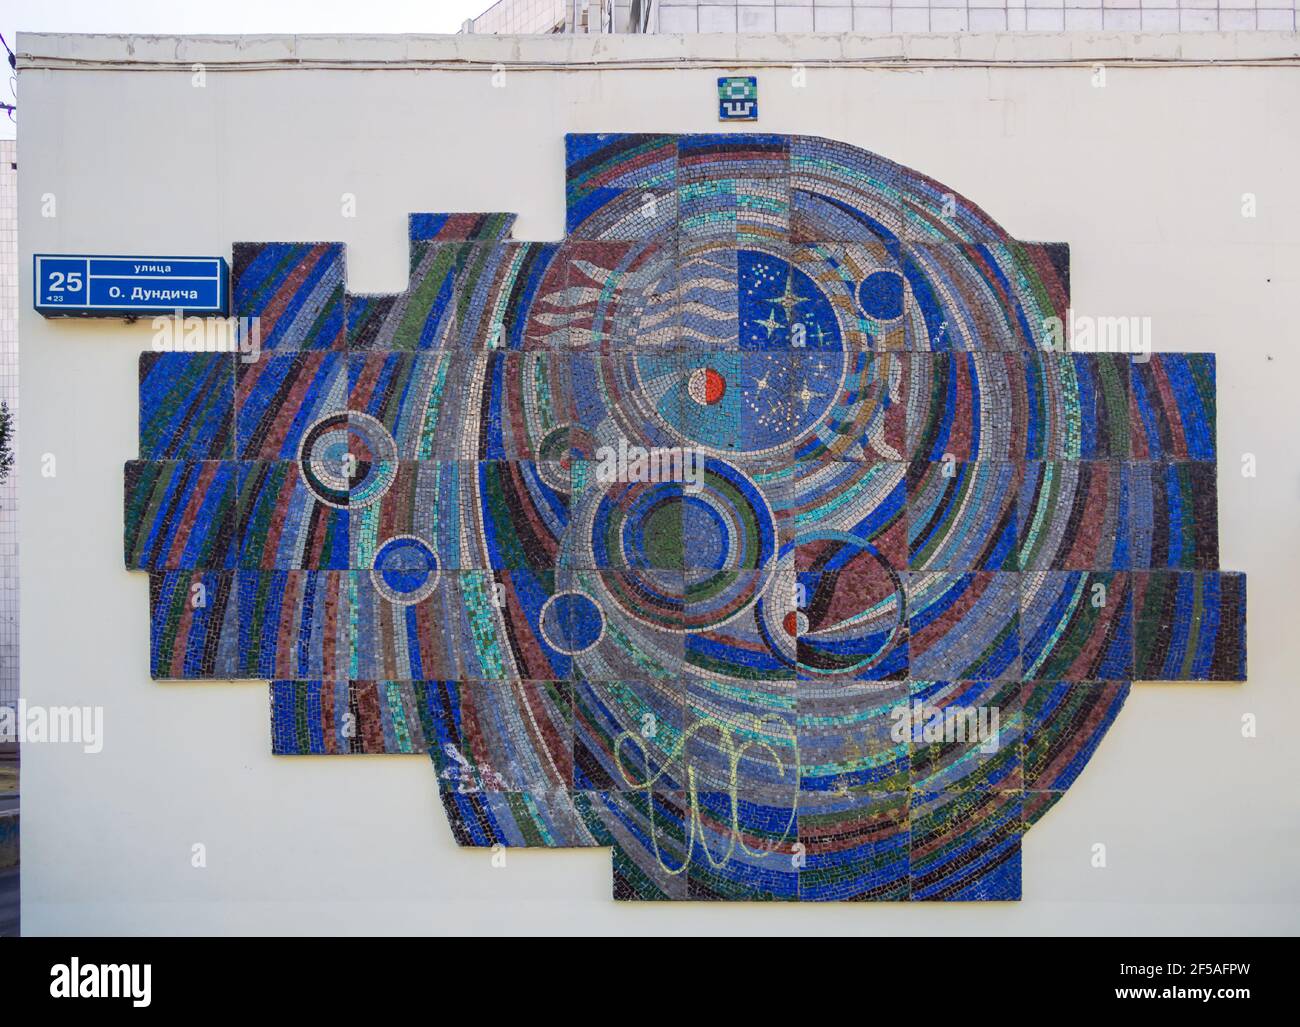 Woronesch, Russland - 30. August 2020: Panel über ein Raumthema auf dem Gebäude des ehemaligen Kosmonauten-Club in 25 O. Dundich Straße, Woronesch Stockfoto